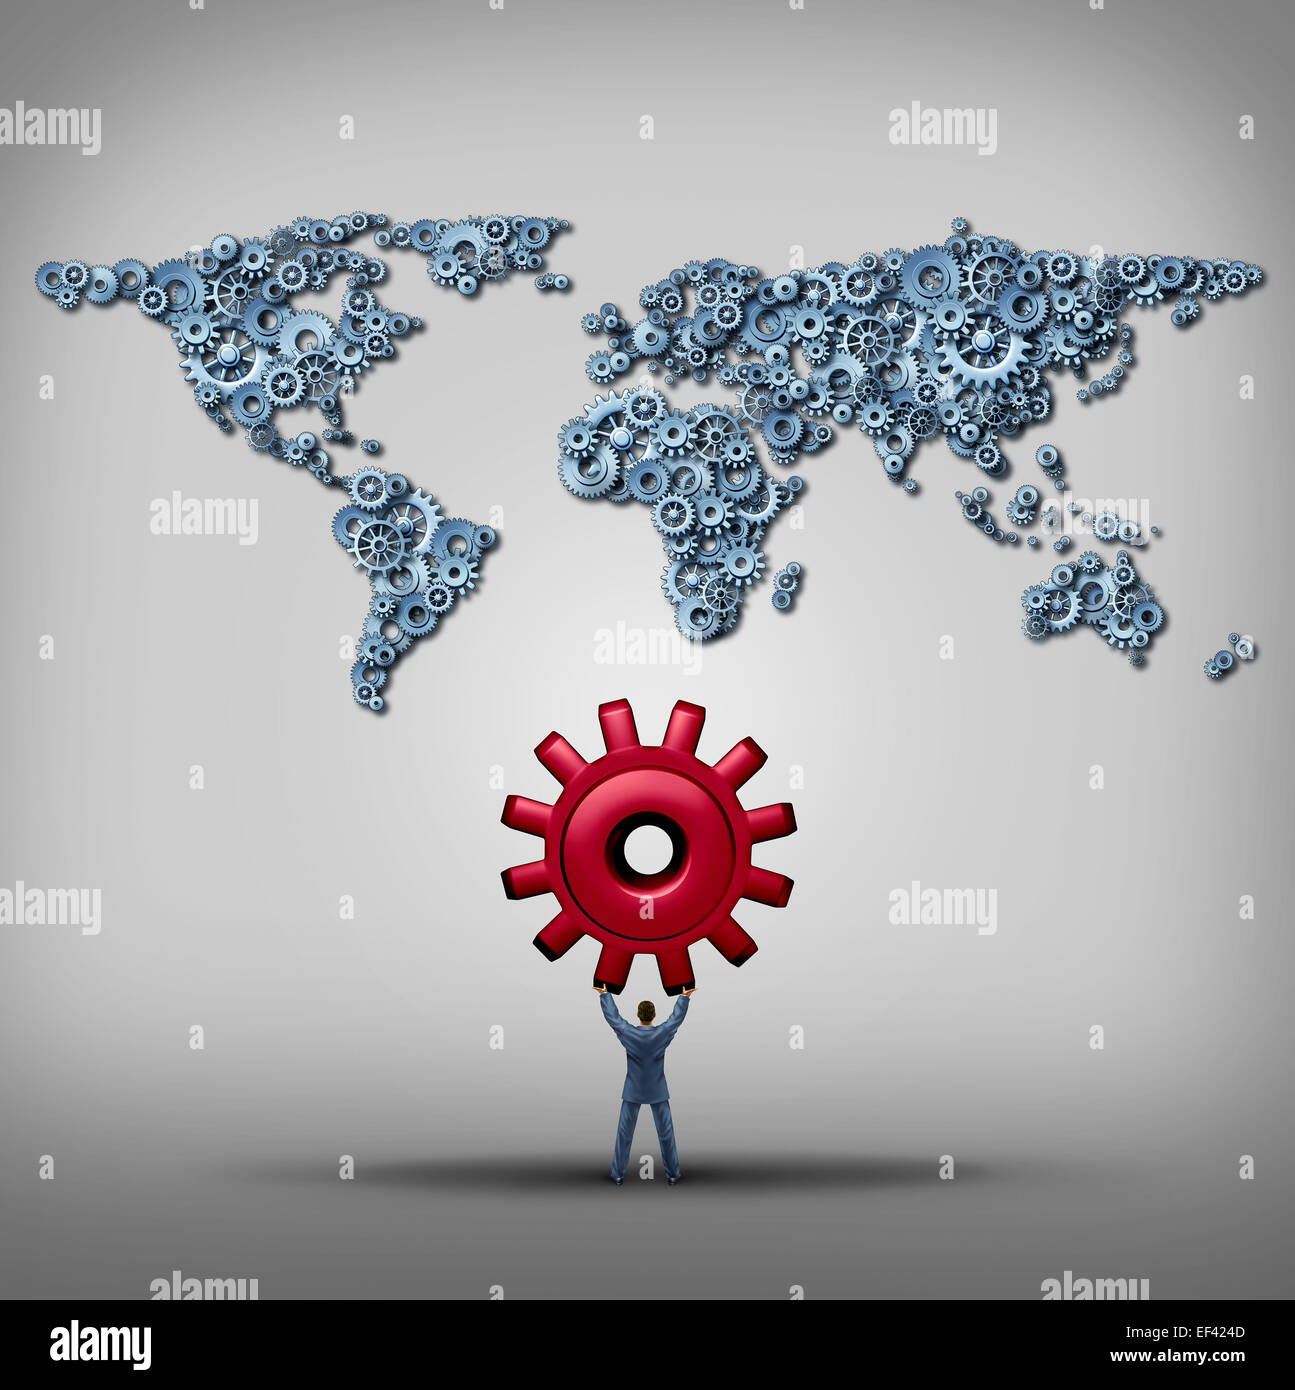 Globales Management-Business-Konzept als Geschäftsmann hob einen roten Gang mit Blick auf eine Gruppe von Getriebe und Zahnräder in Form einer Weltkarte als Metapher für eine internationale Strategie Erfolg. Stockfoto